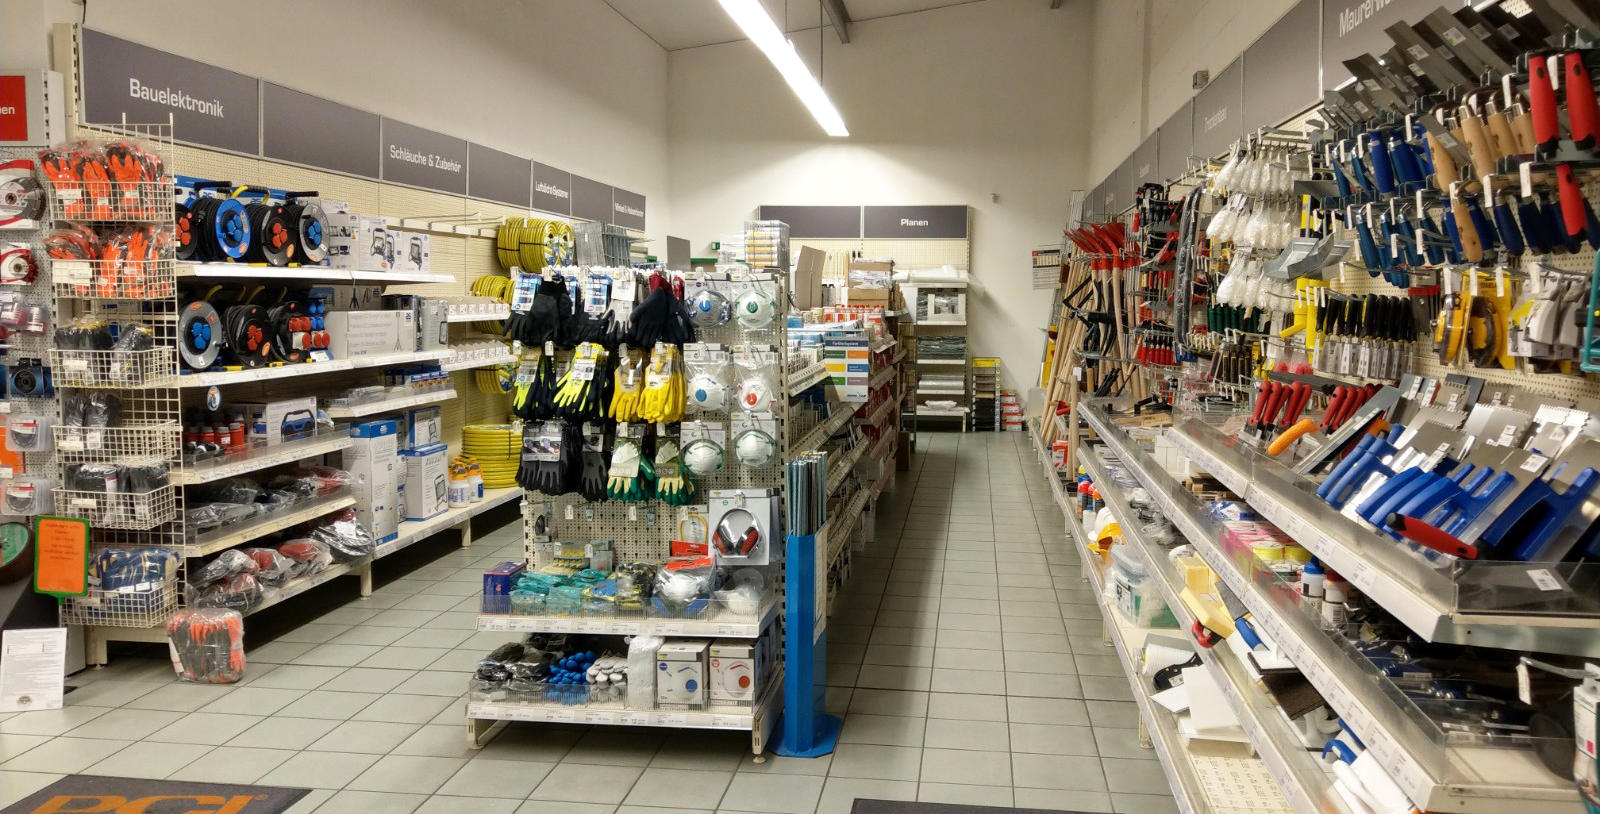 Bild 4 BAUEN+LEBEN - Ihr Baufachhandel | BAUEN+LEBEN GmbH & Co. KG in Bedburg-Hau